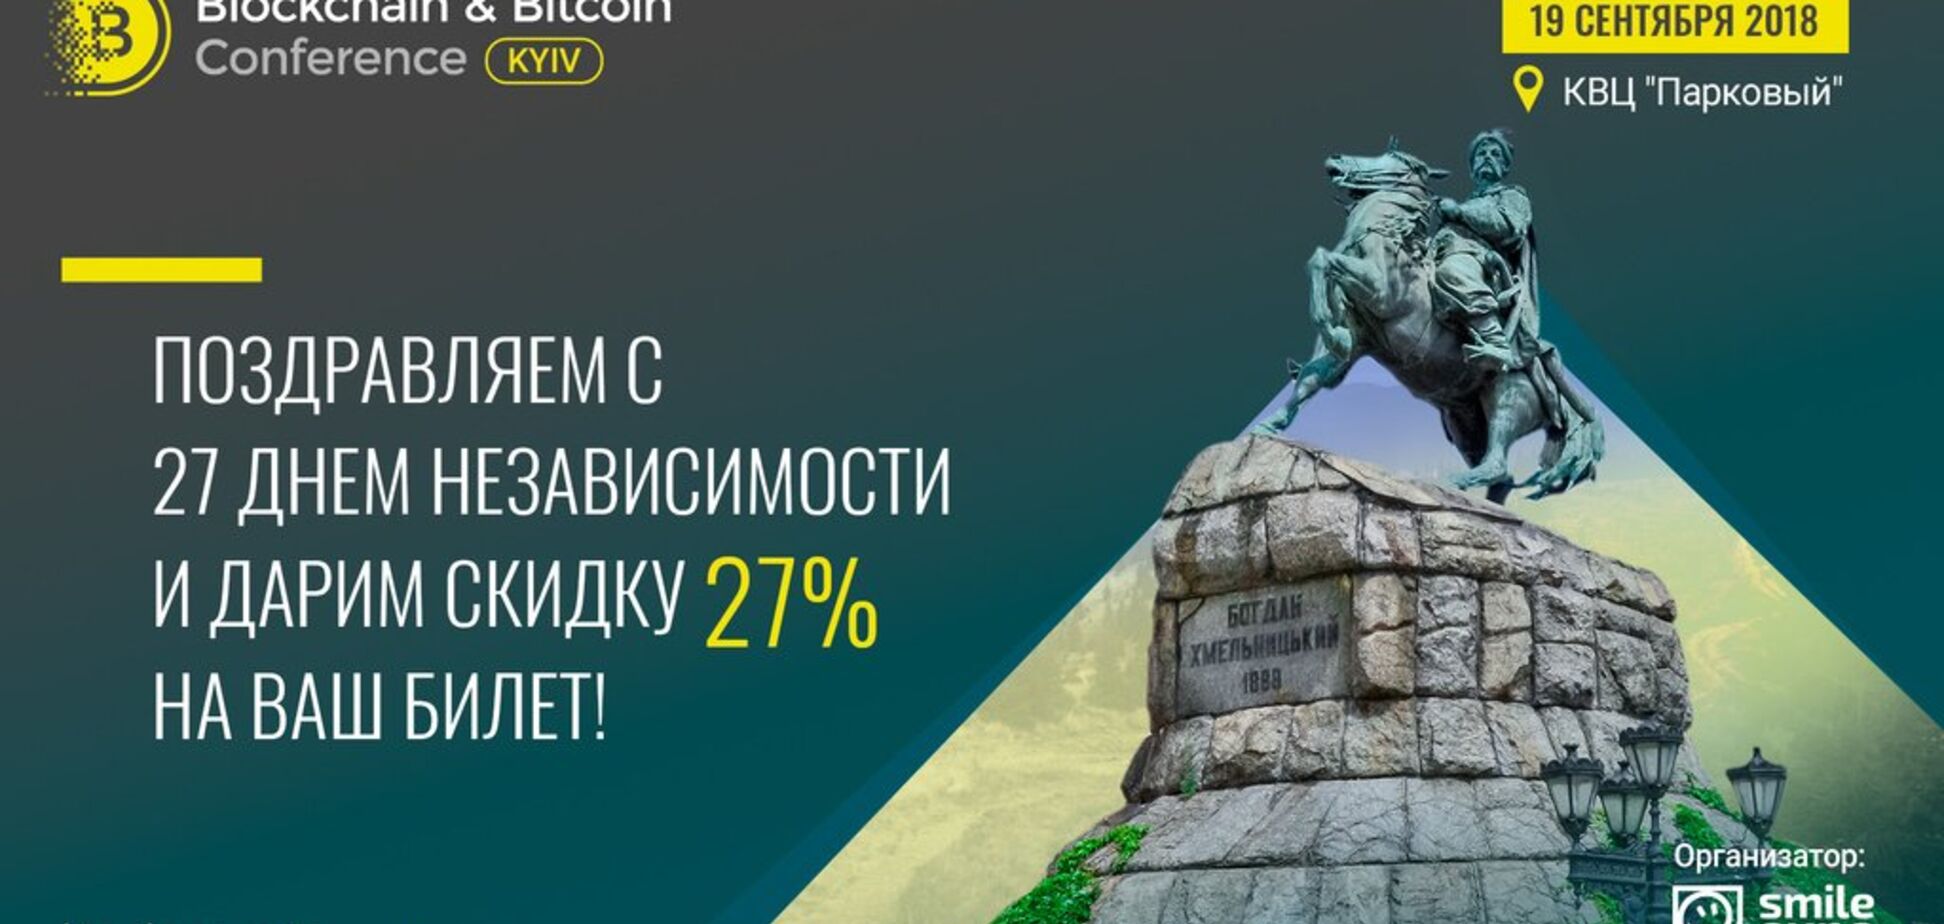 К 27-й годовщине независимости Украины Blockchain & Bitcoin Conference Kyiv дарит скидку на билеты – 27%